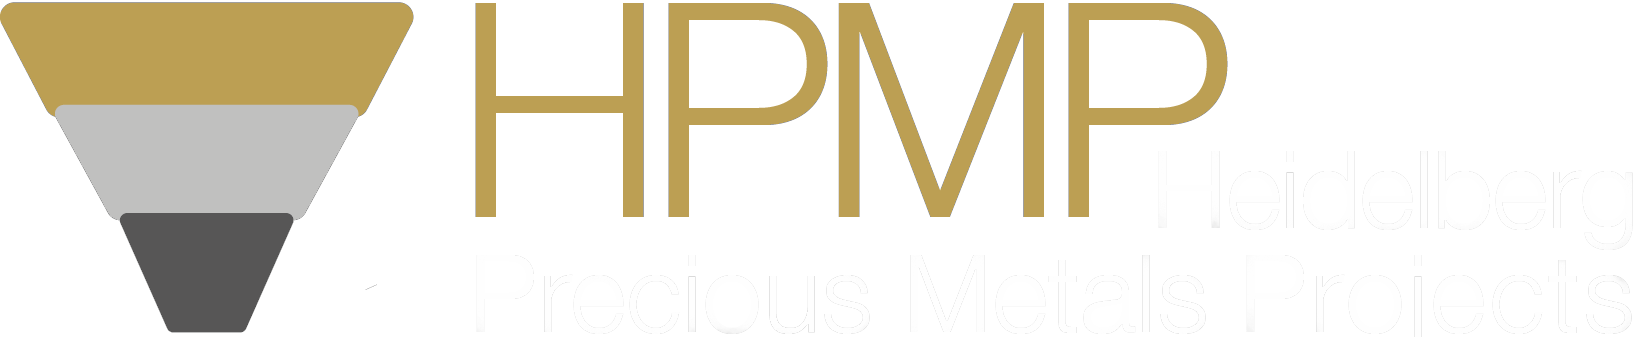 logo HPMP